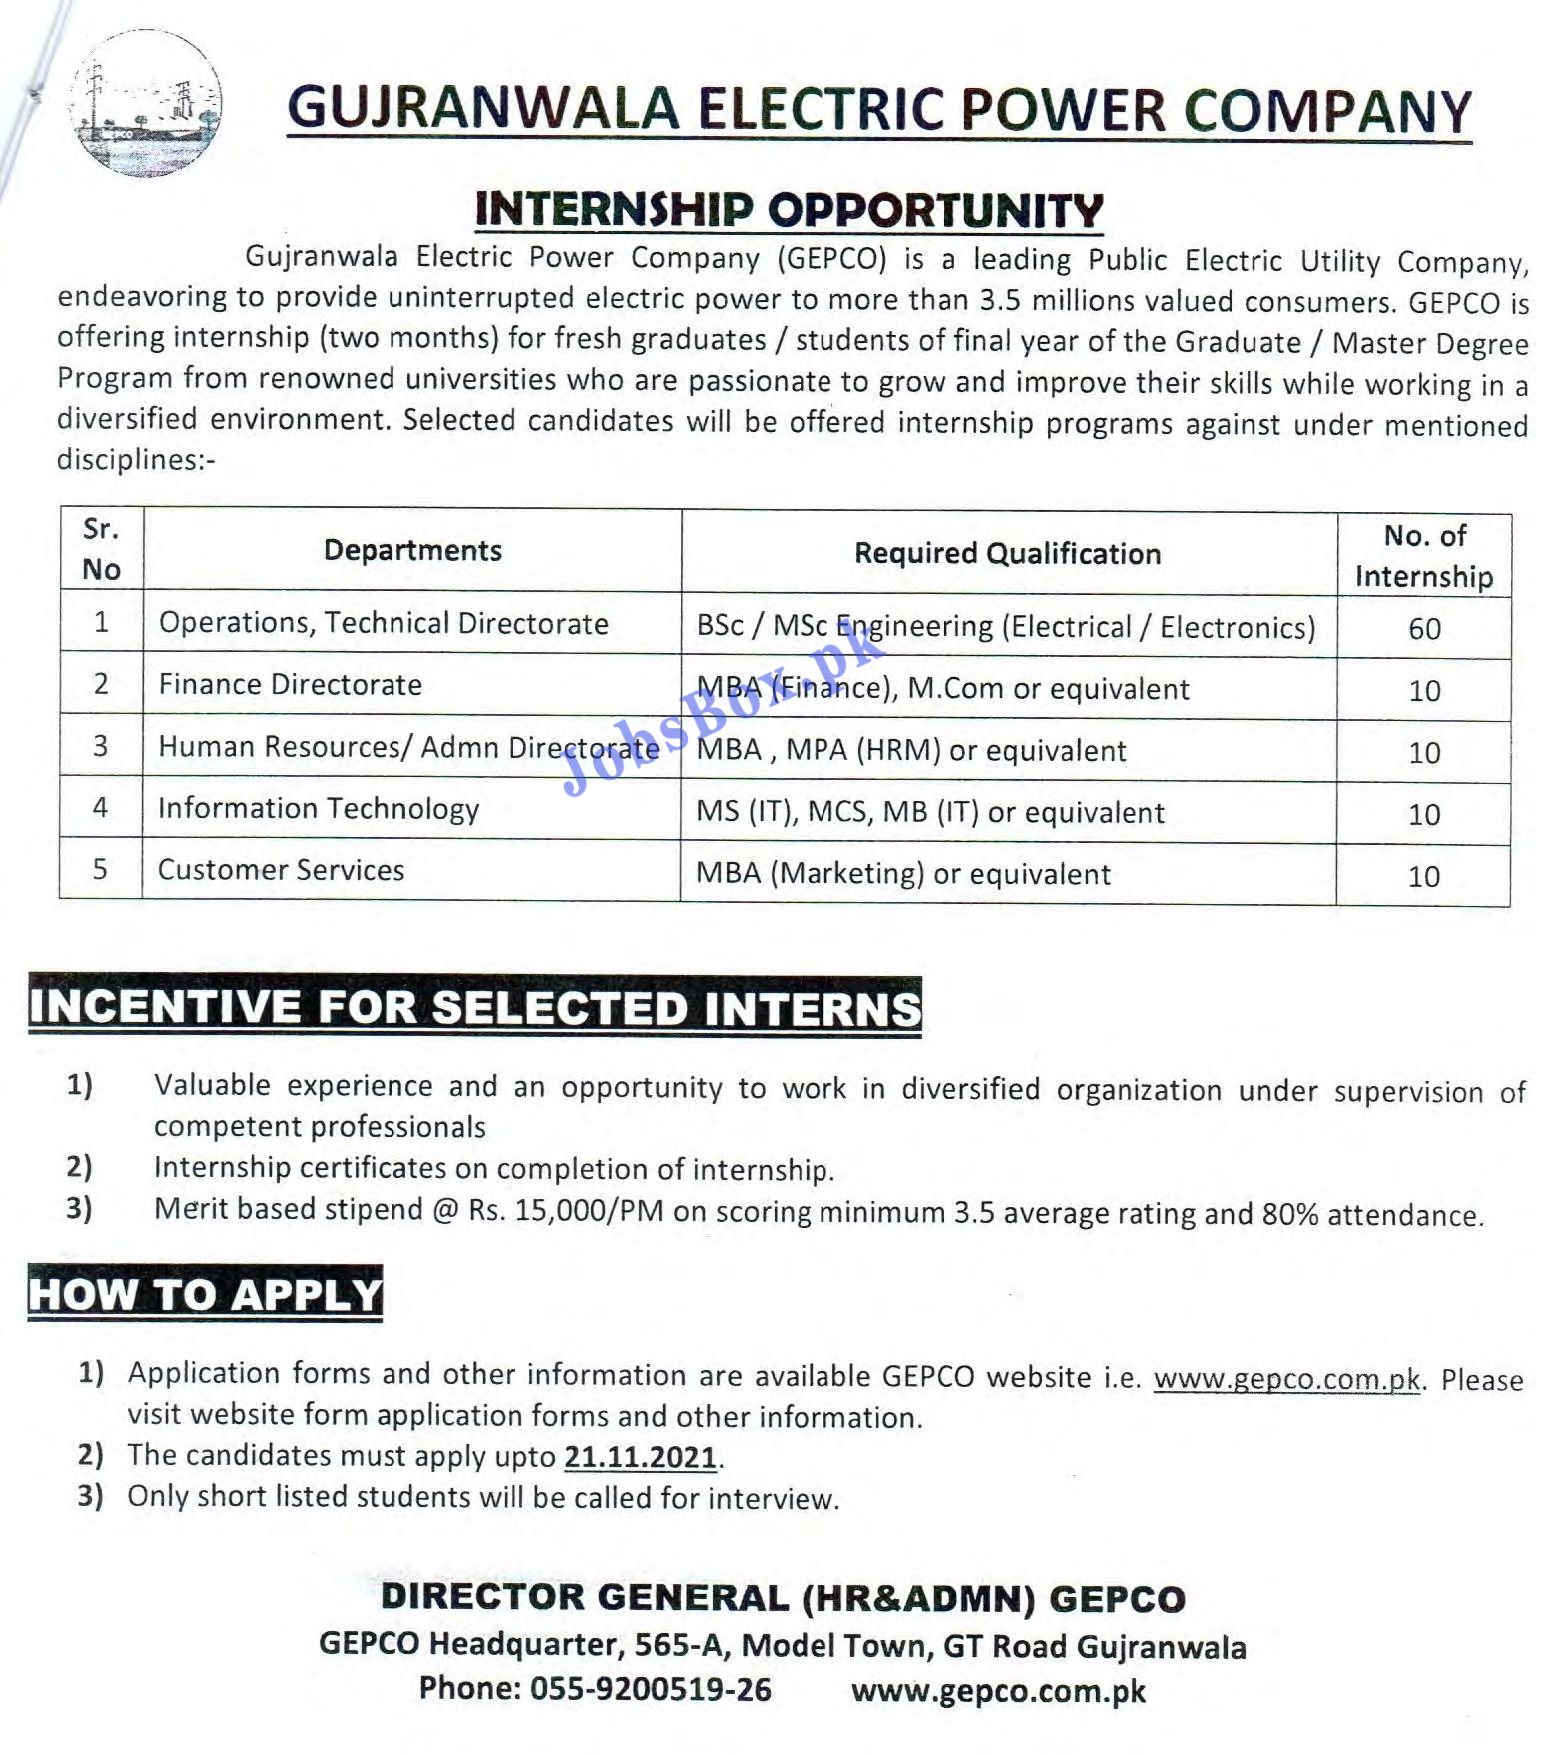 GEPCO Internship Program 2021 - www.gepco.com.pk